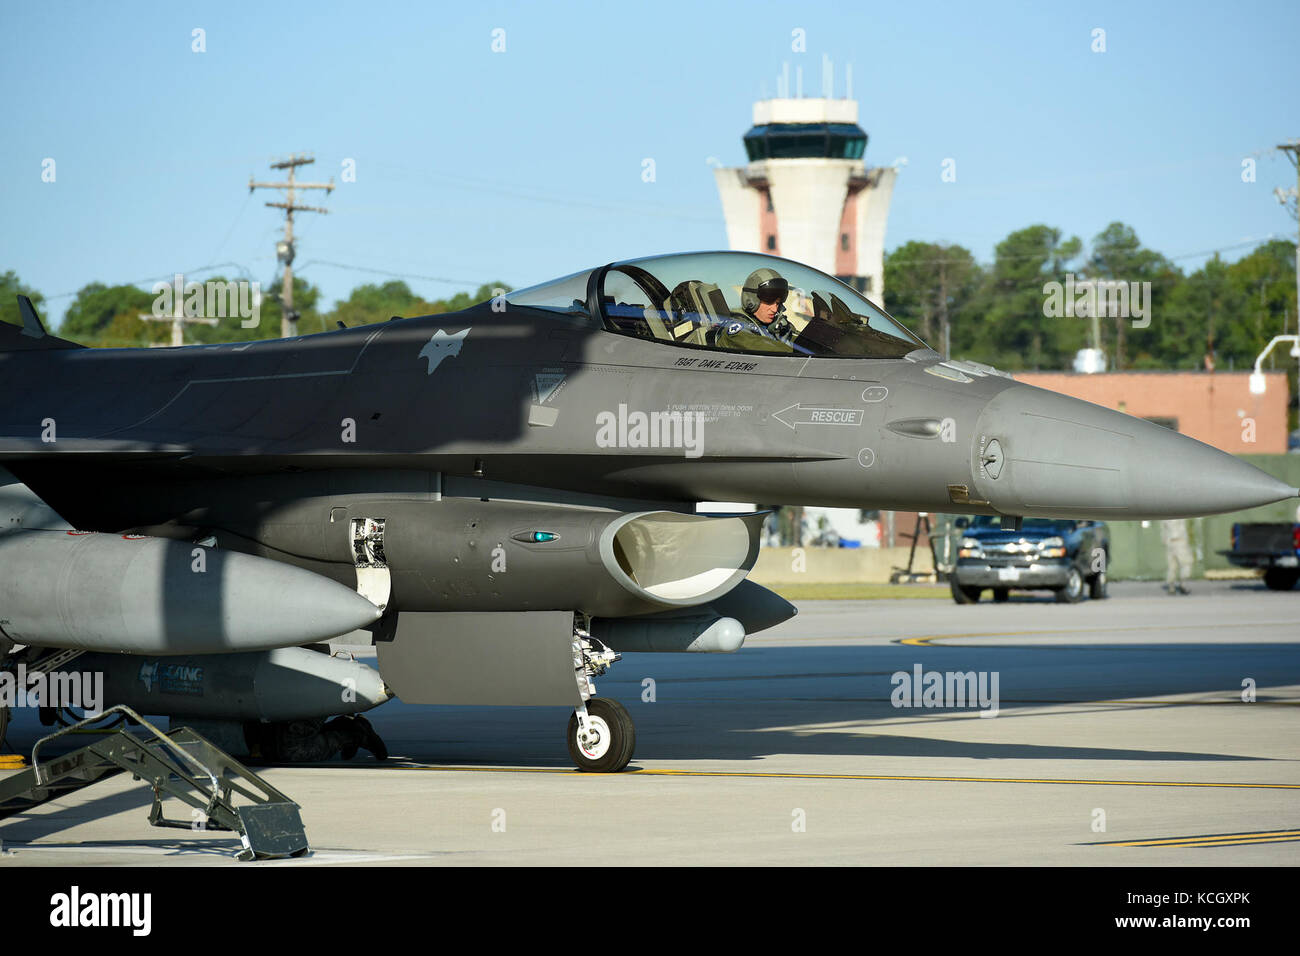 F-16 de la Fuerza Aérea de EE.UU. lucha falcon de cazas de la Guardia Nacional Aérea de Carolina del Sur la 169ª Ala de caza en mcentire joint base de la guardia nacional, el lanzamiento para reubicar en preparación para el huracán el impacto potencial de la irma, sept. 9, 2017. El huracán irma llegó como un huracán de categoría 5 en el océano atlántico y se prevé que el impacto partes de S.C. La Guardia Nacional Aérea de EE.UU. (Foto por el sargento primero caycee Watson) Foto de stock